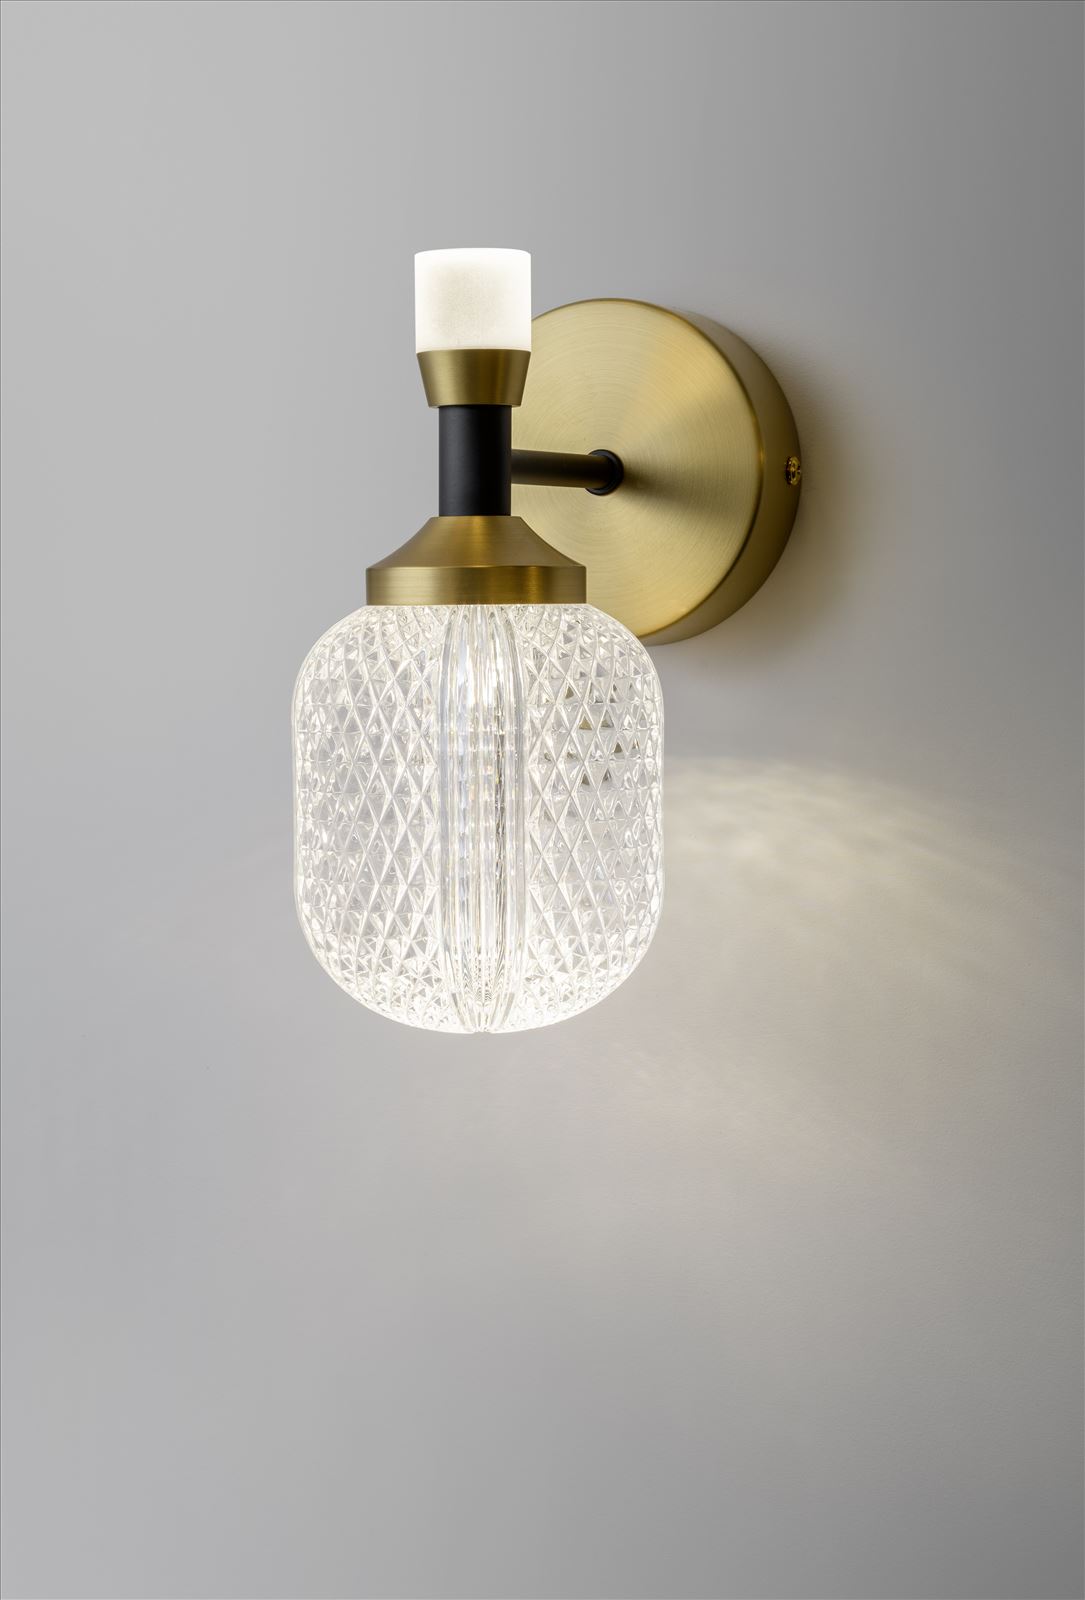 גופי תאורה בקטגוריית מנורות קיר שם המוצר חושן • Dori Kimhi Lighting 9659